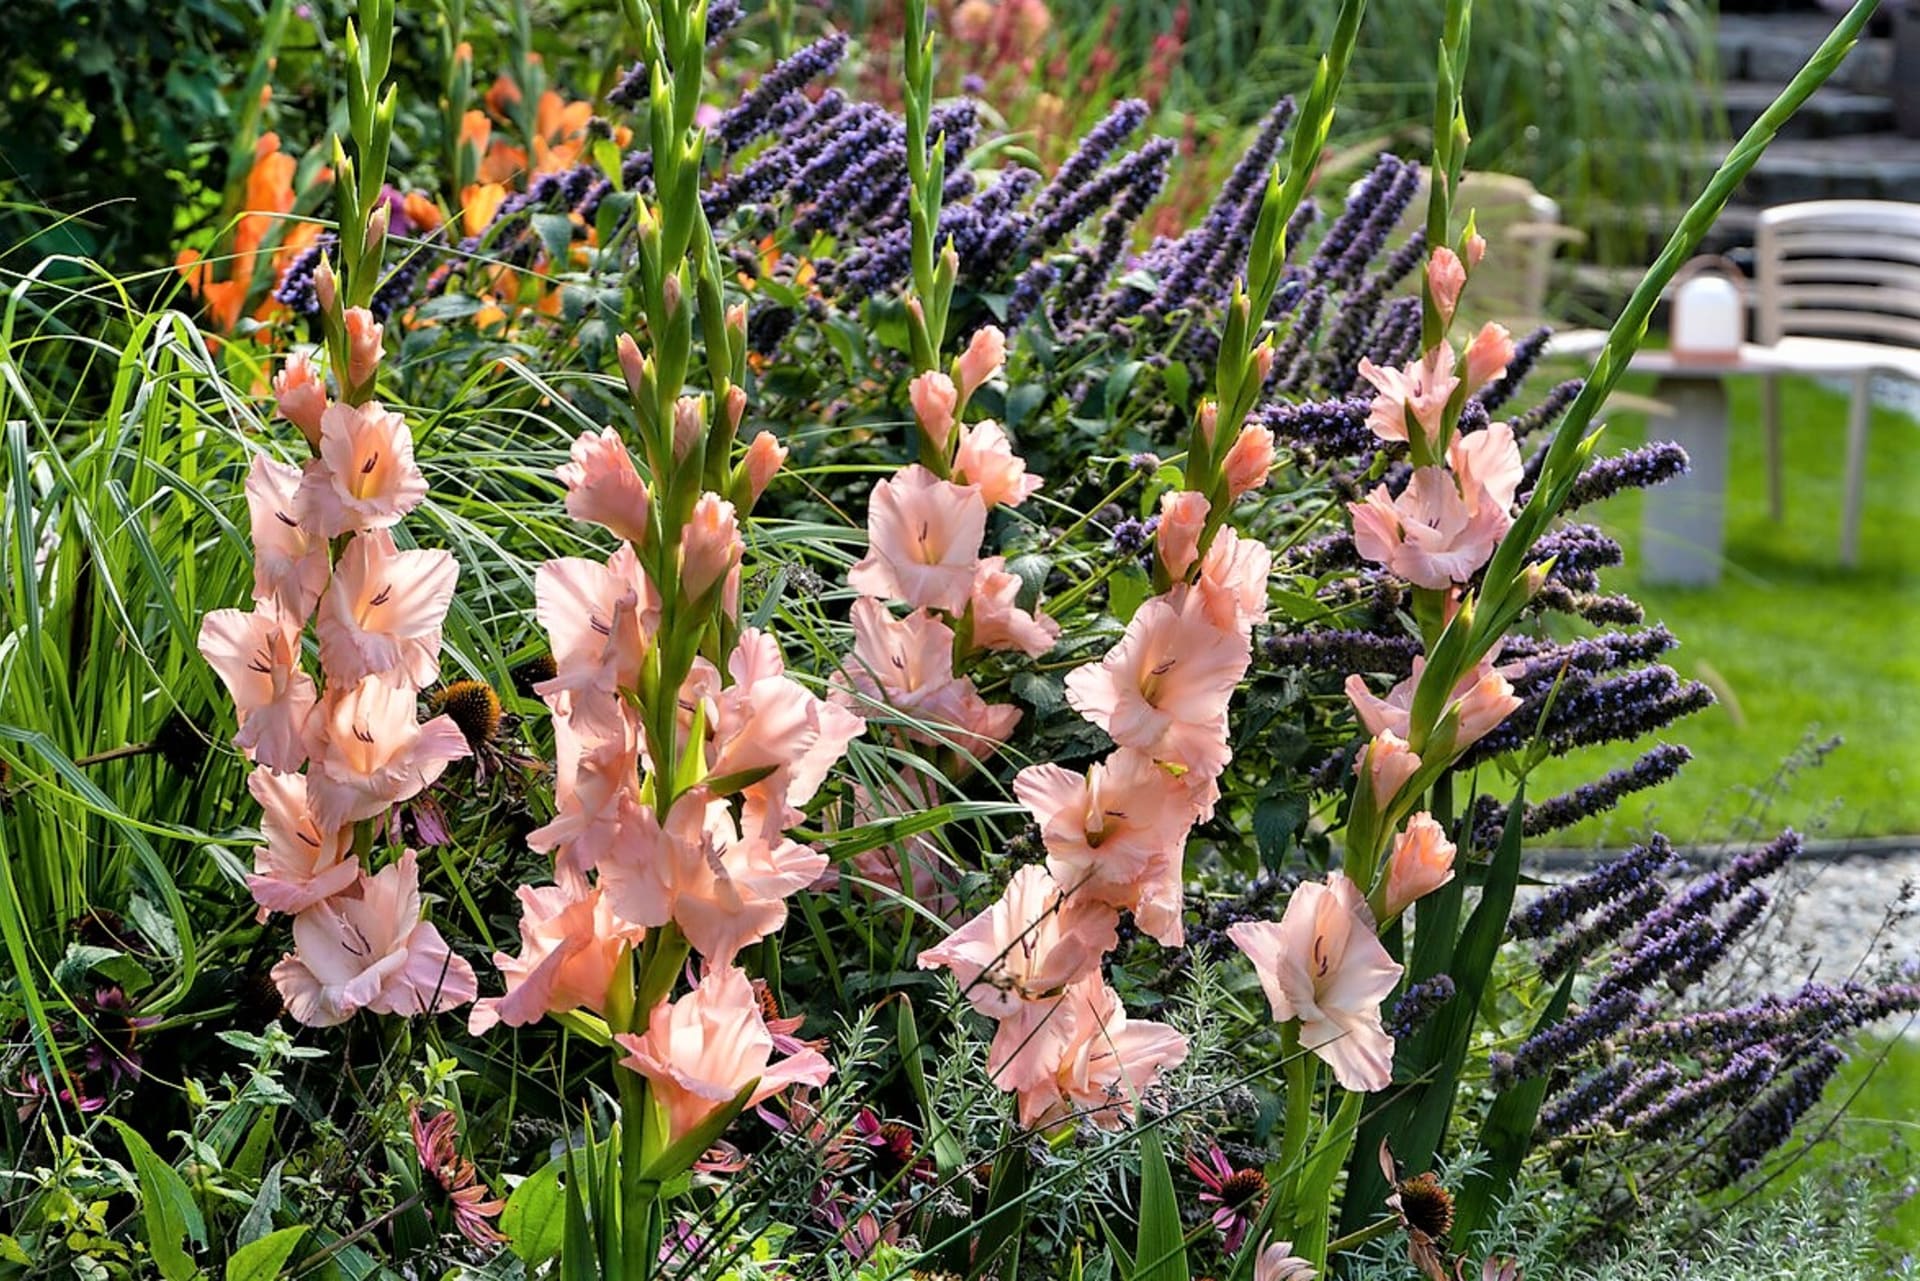 Šest nejkrásnějších letních cibulovin: Zahradní mečíky se šlechtí od roku 1841 a dnes existuje několik desítek tisíc různých kultivarů. Dělí se do různých skupin, například na trpasličí, malokvěté, velkokvěté, motýlokvěté atd.